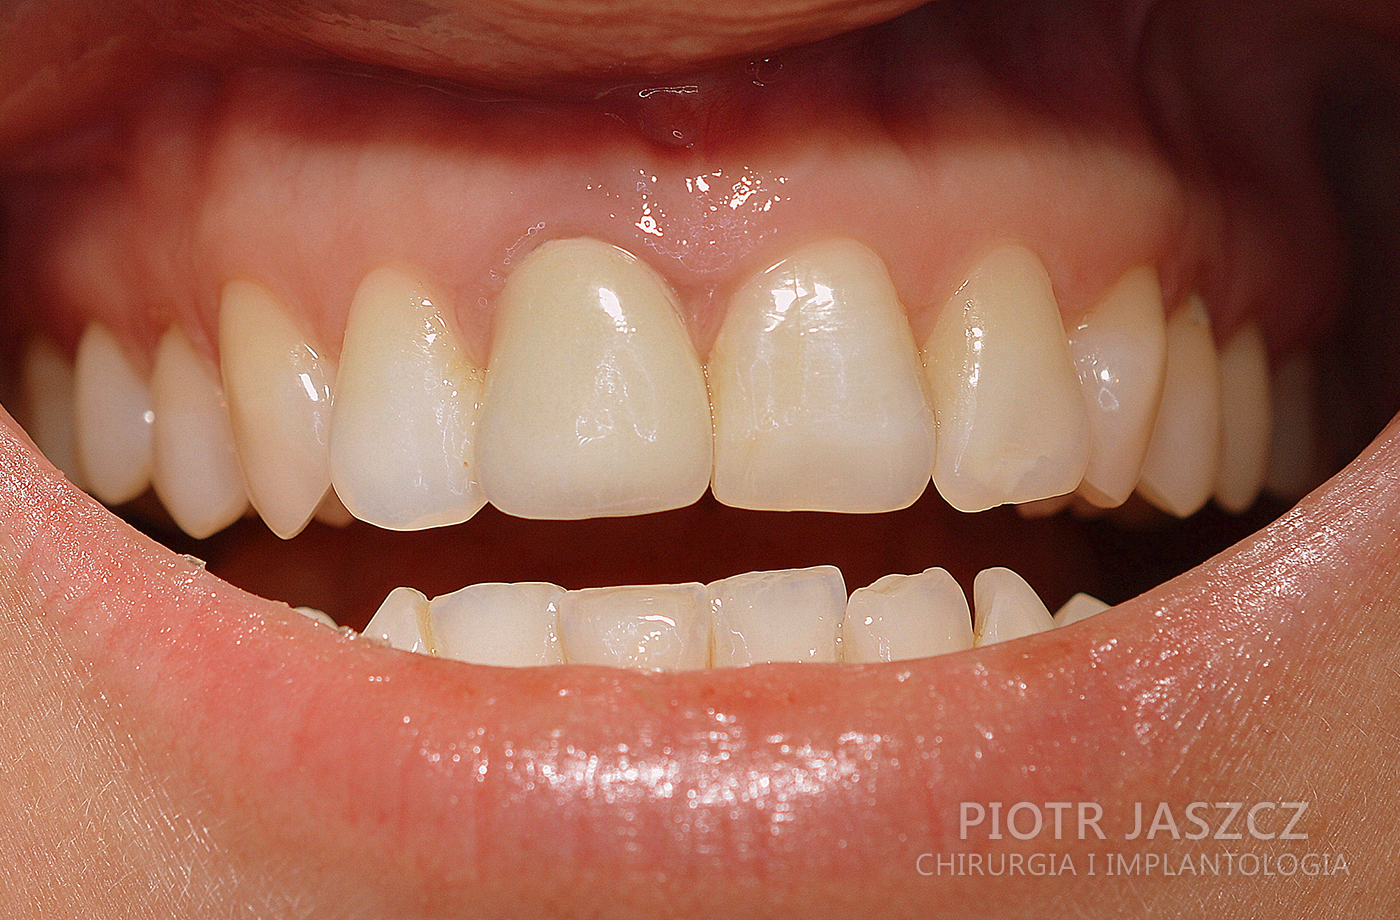 Resorpcja zewnętrzna korony i korzenia jedynki górnej prawej pacjenta. Usunięcie zęba z jednoczesnym wszczepieniem implantu oraz regeneracją kości horyzontalnie ( poziomo ) przy użyciu membrany kolagenowej i materiału kościozastępczego. Widoczna korona ostateczna na implancie. 